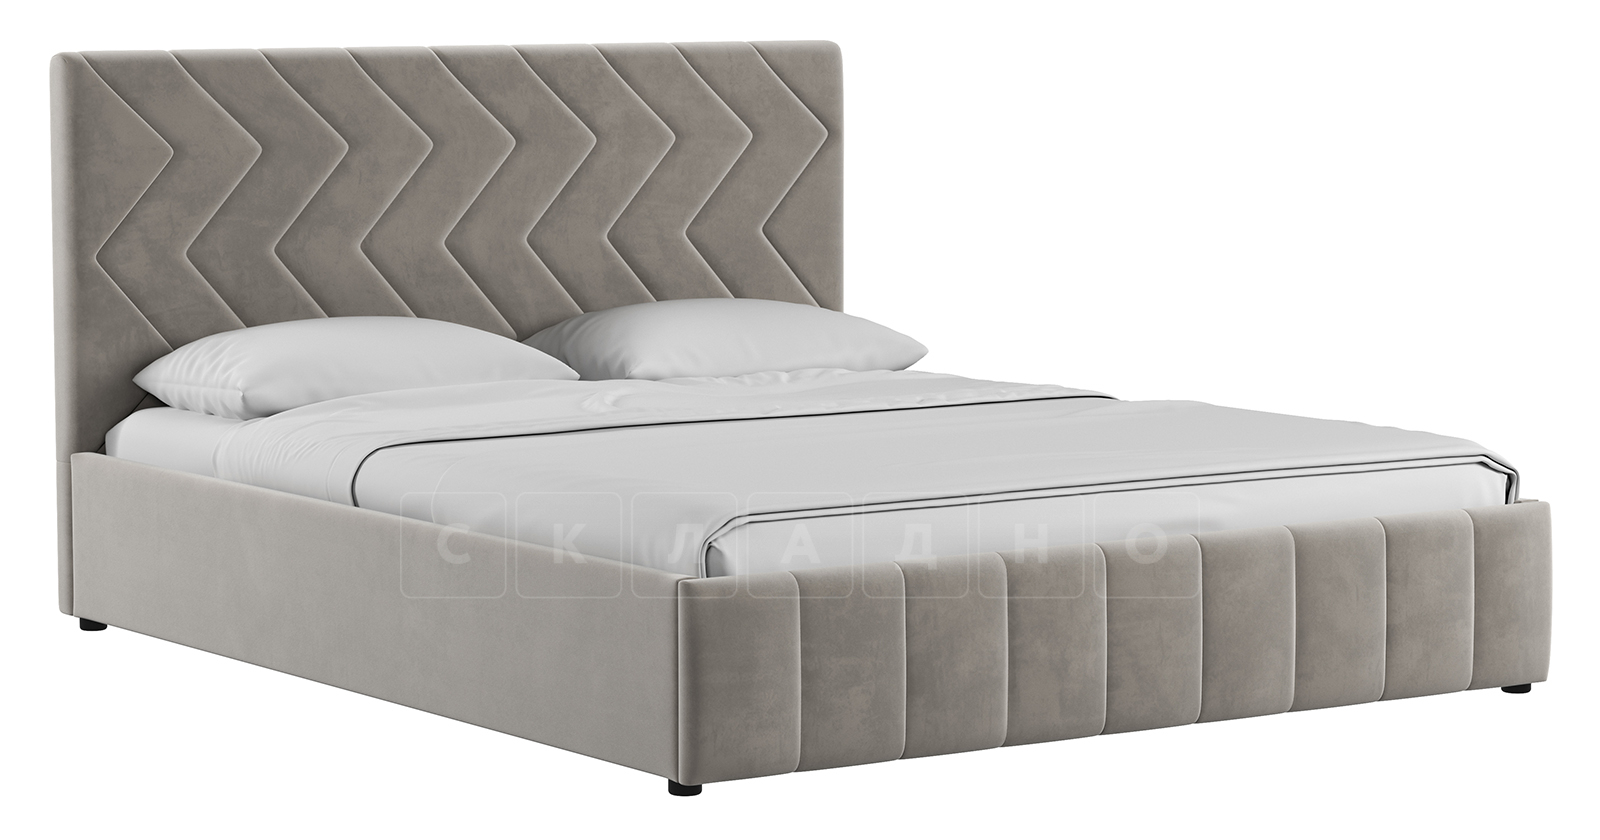 Мягкая кровать Милана 160 см светлый кварцевый серый с подъемным механизмом фото 1 | интернет-магазин Складно